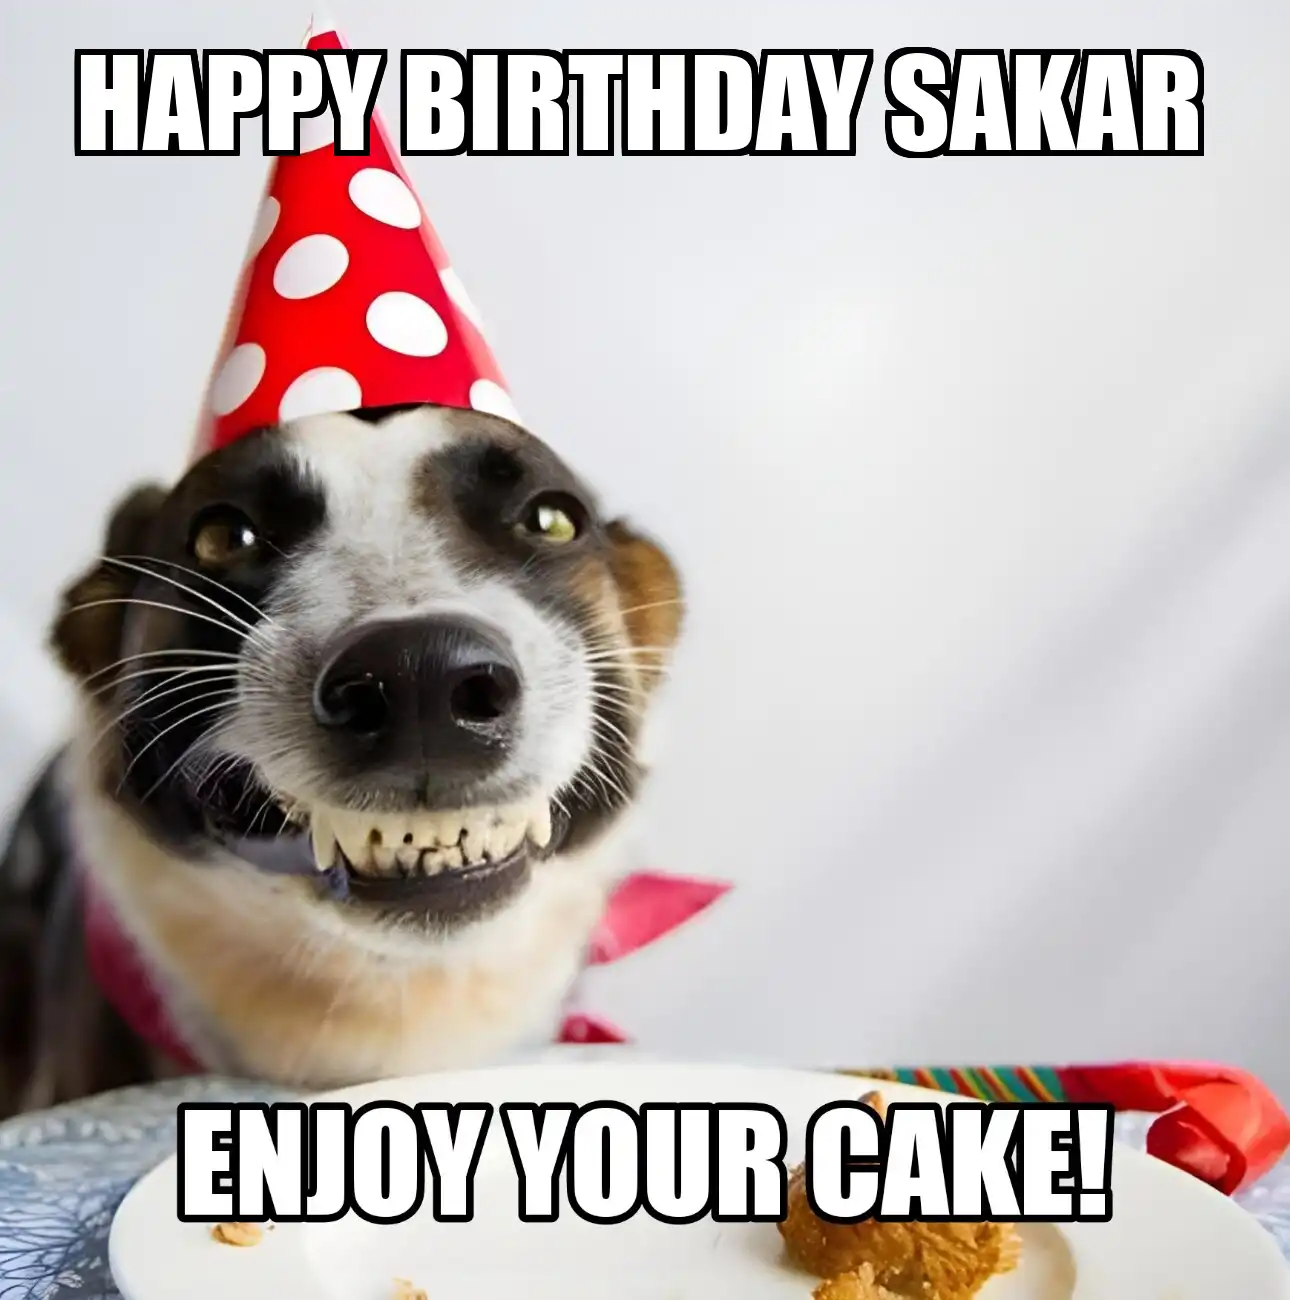 Happy Birthday Sakar Enjoy Your Cake Dog Meme